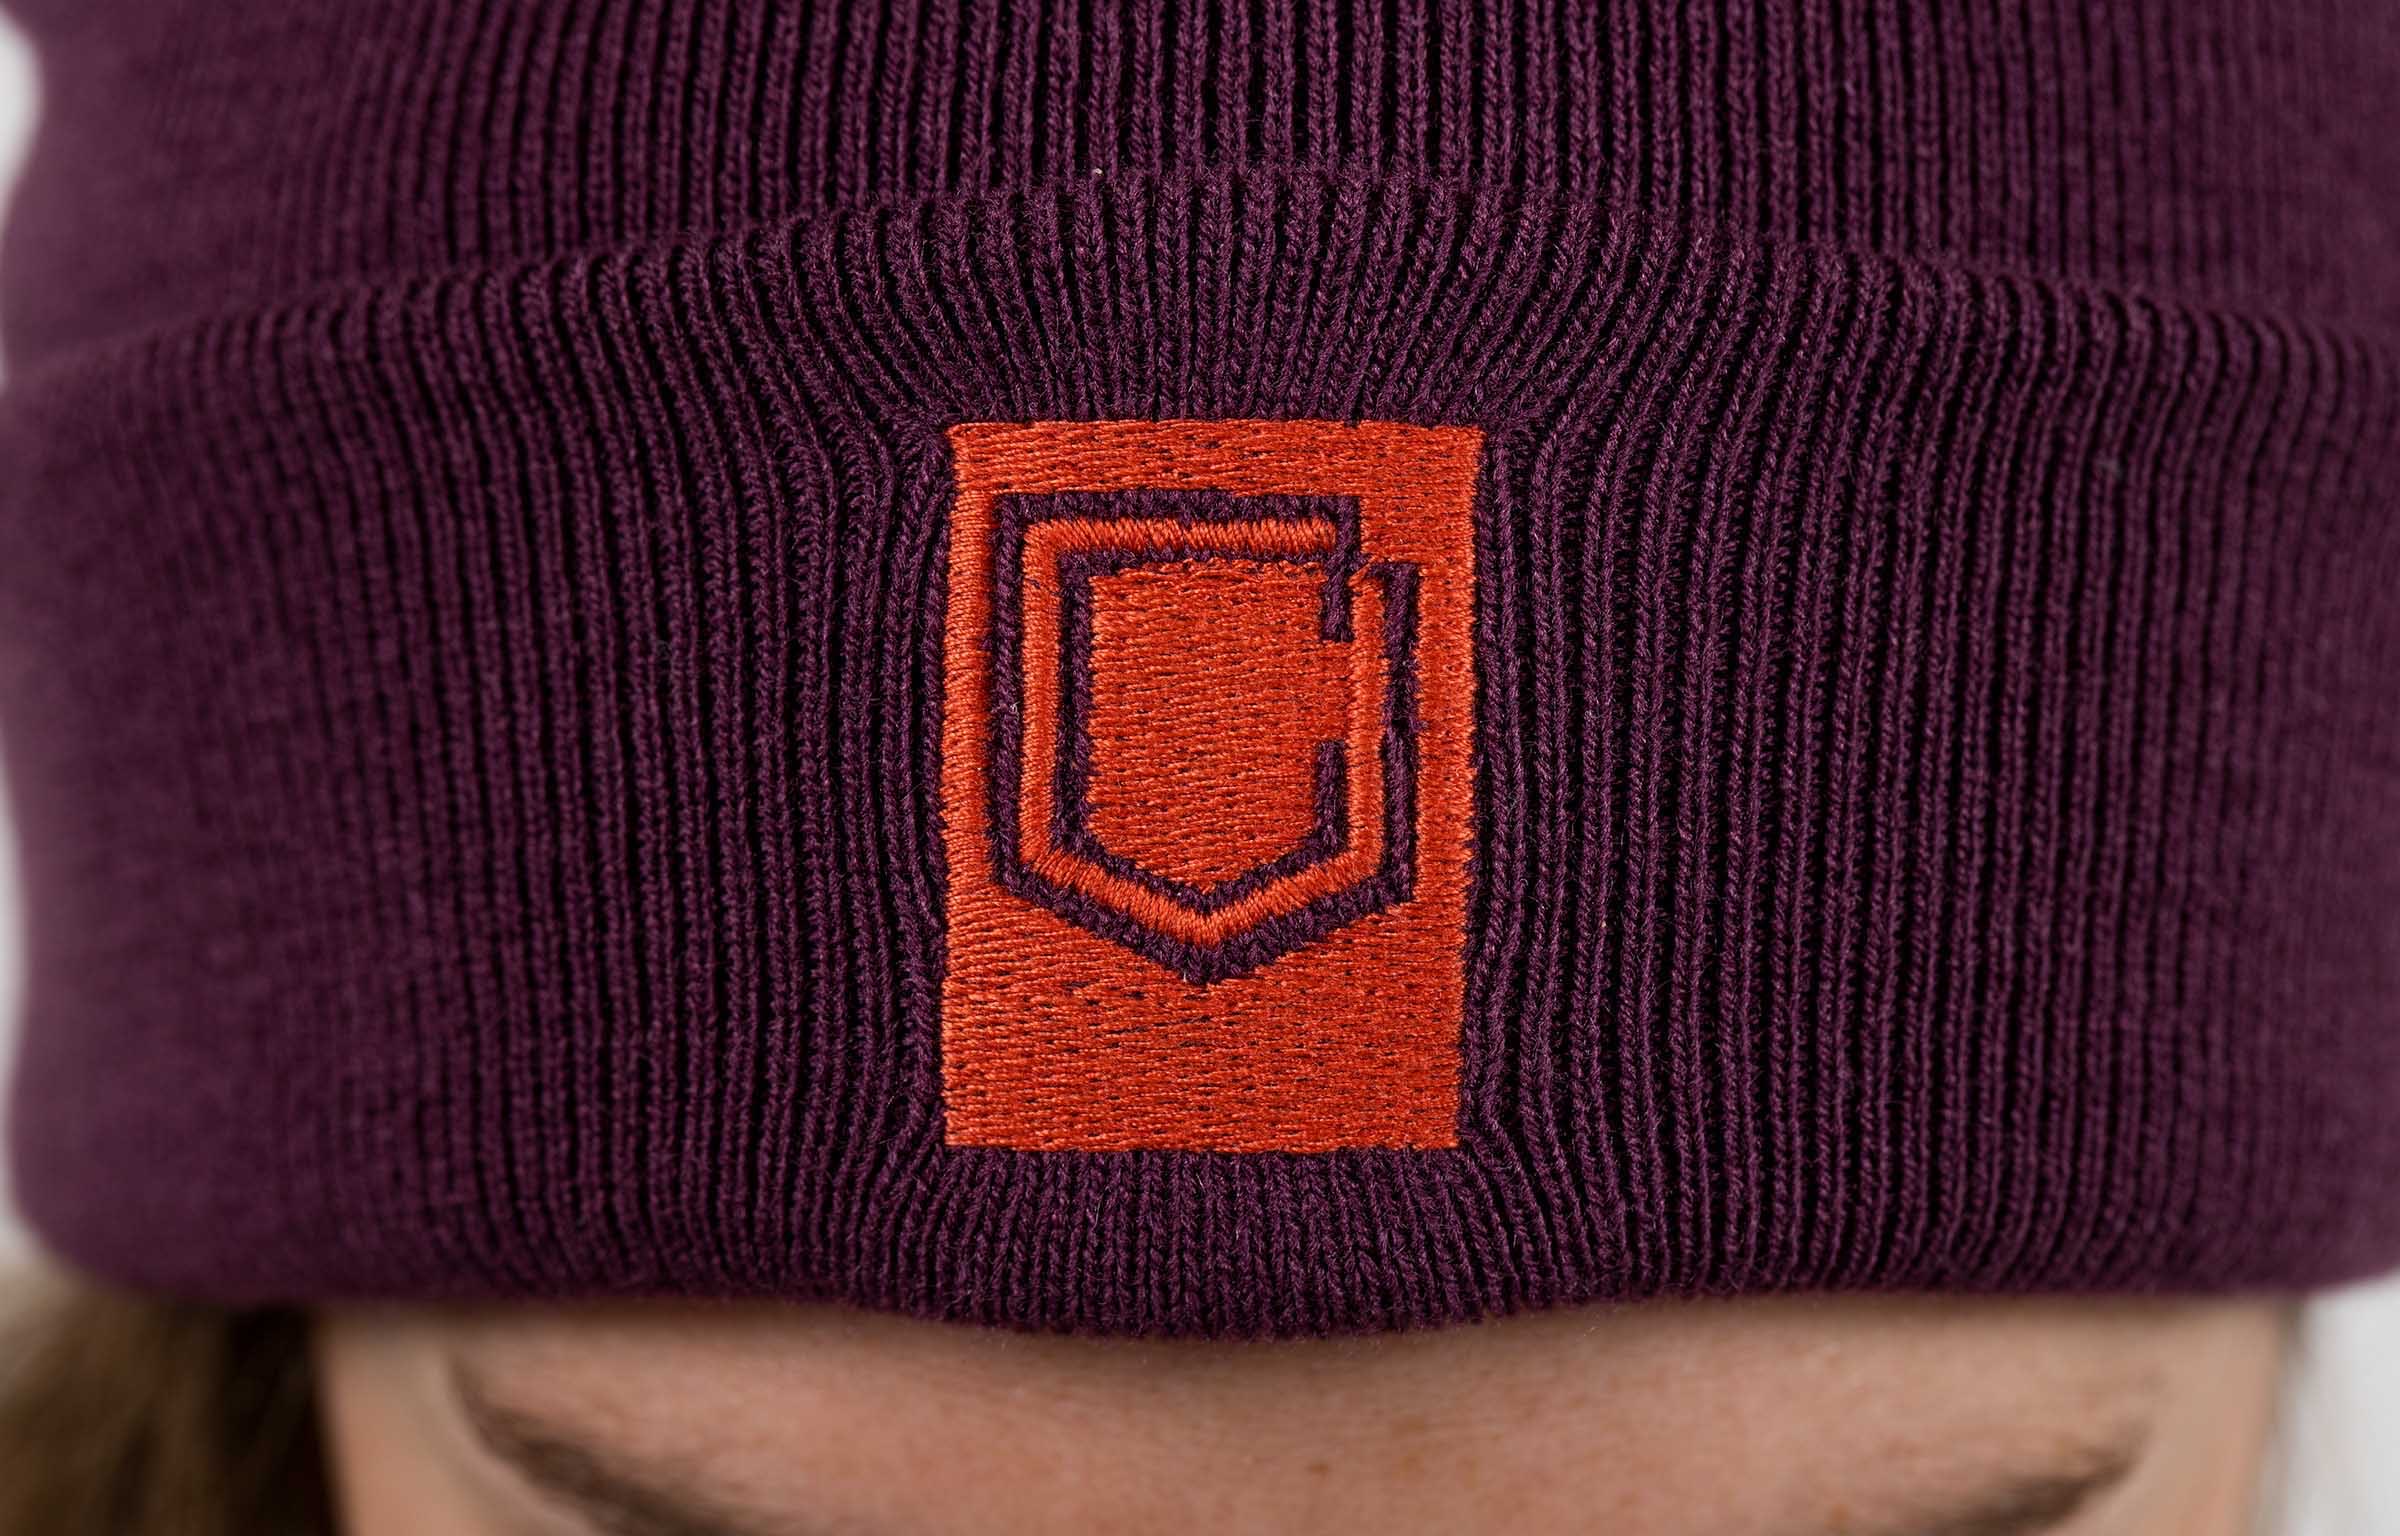 Supreme S logo wool cap + Leaf beanie 